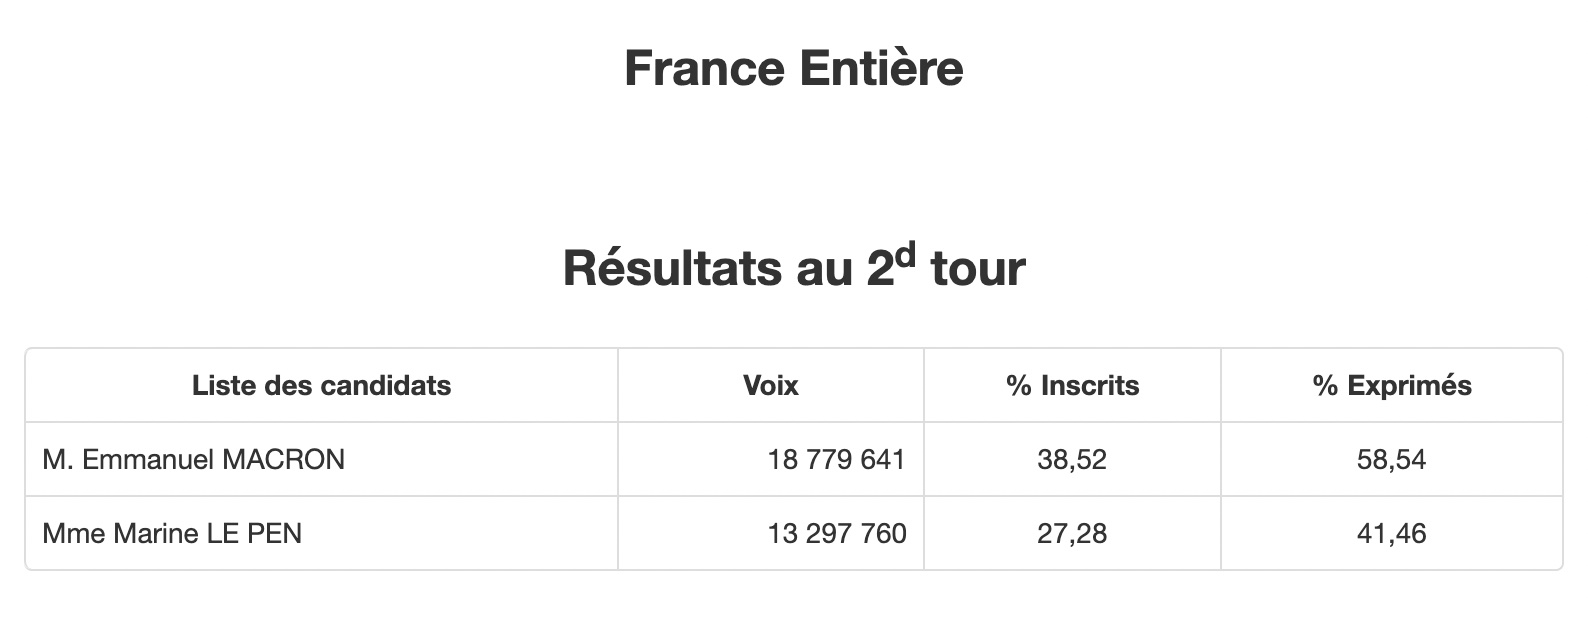 Официально. Макрон победил в президентских выборах Франции с результатом 58,54%